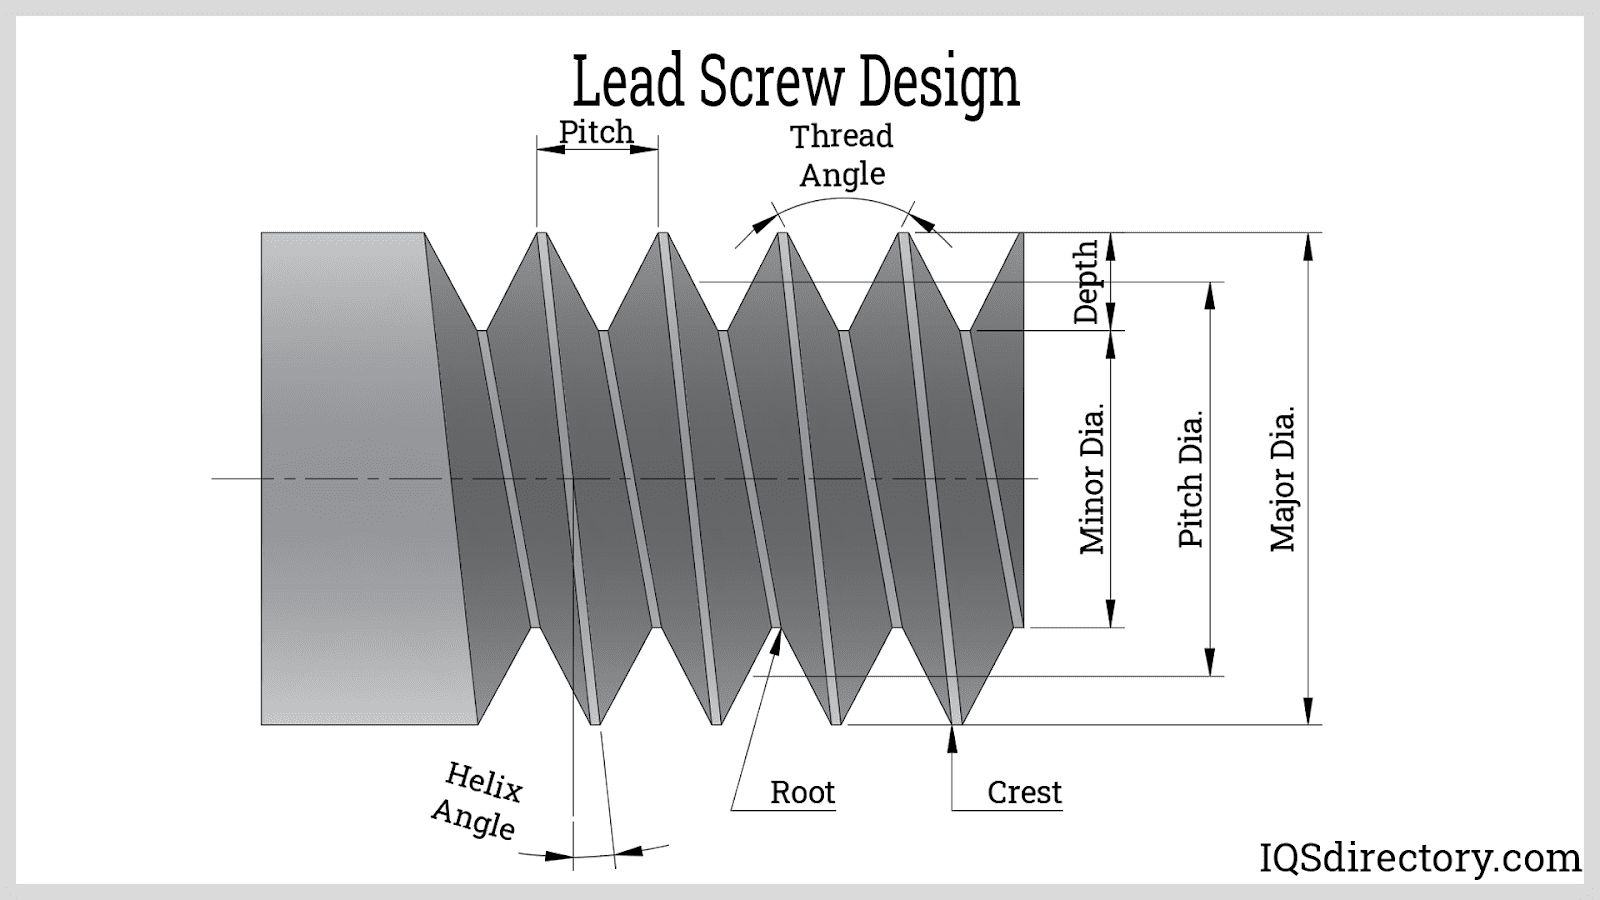 Lead screw - Der Favorit der Redaktion